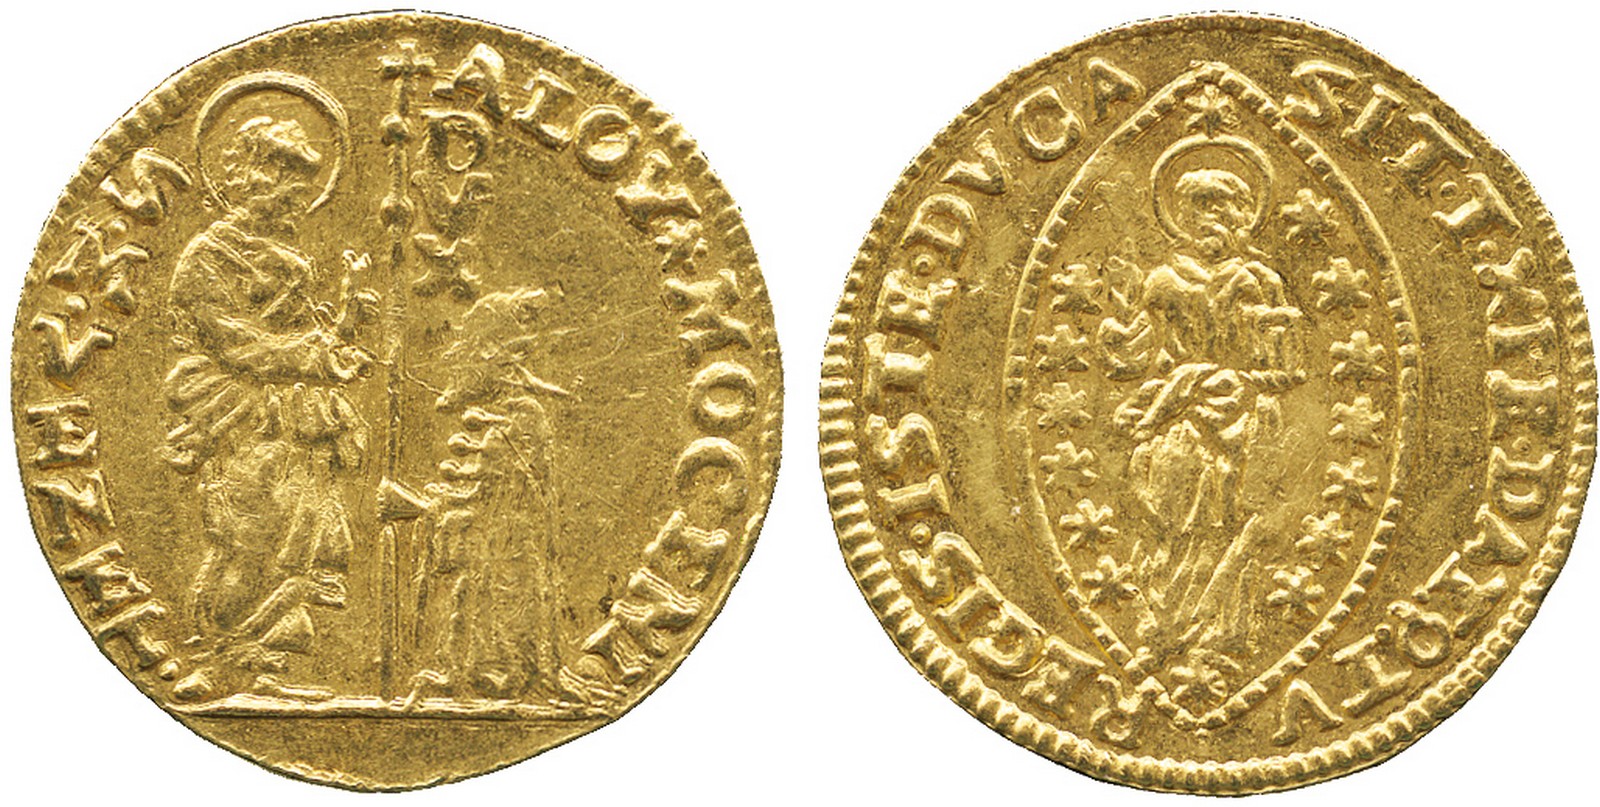 WORLD COINS, Italy, Venice, Alvise III Mocenigo (1722-1732), Gold Zecchino, undated, ALOYMOCENI•,